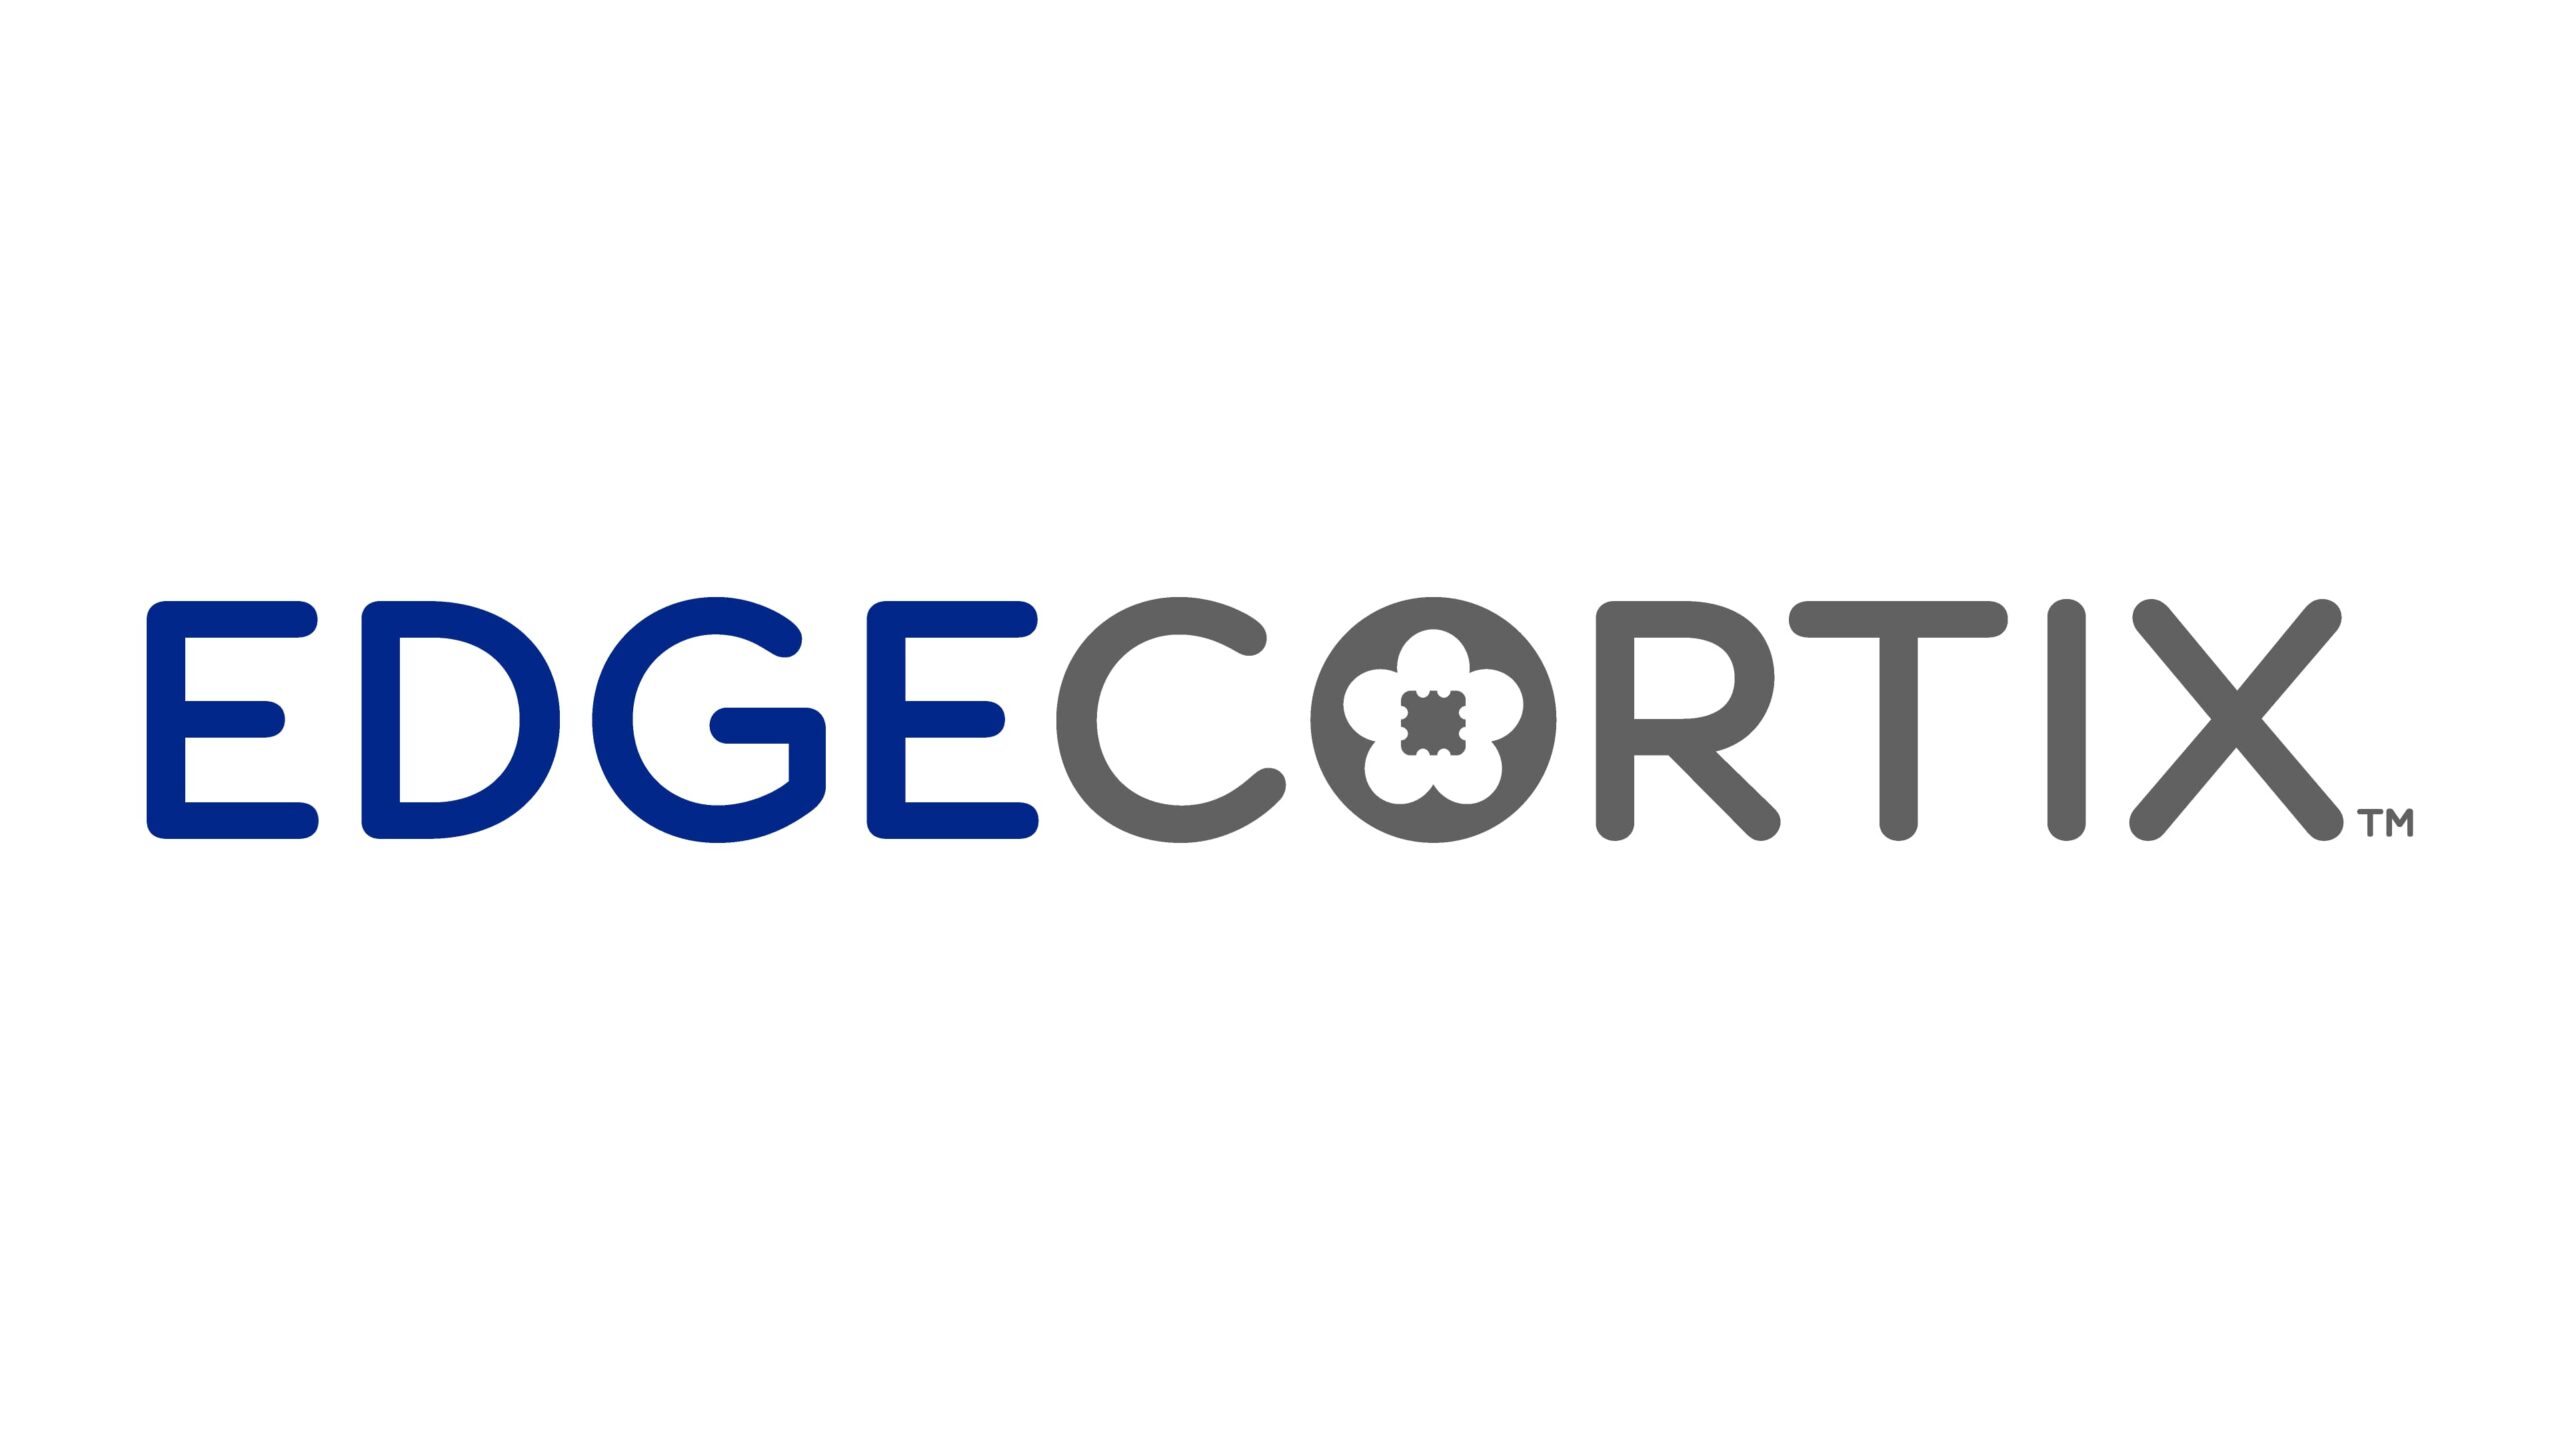 エッジAI向けファブレス半導体開発・設計を手掛けるEdgeCortix株式会社が追加で約30億円を調達